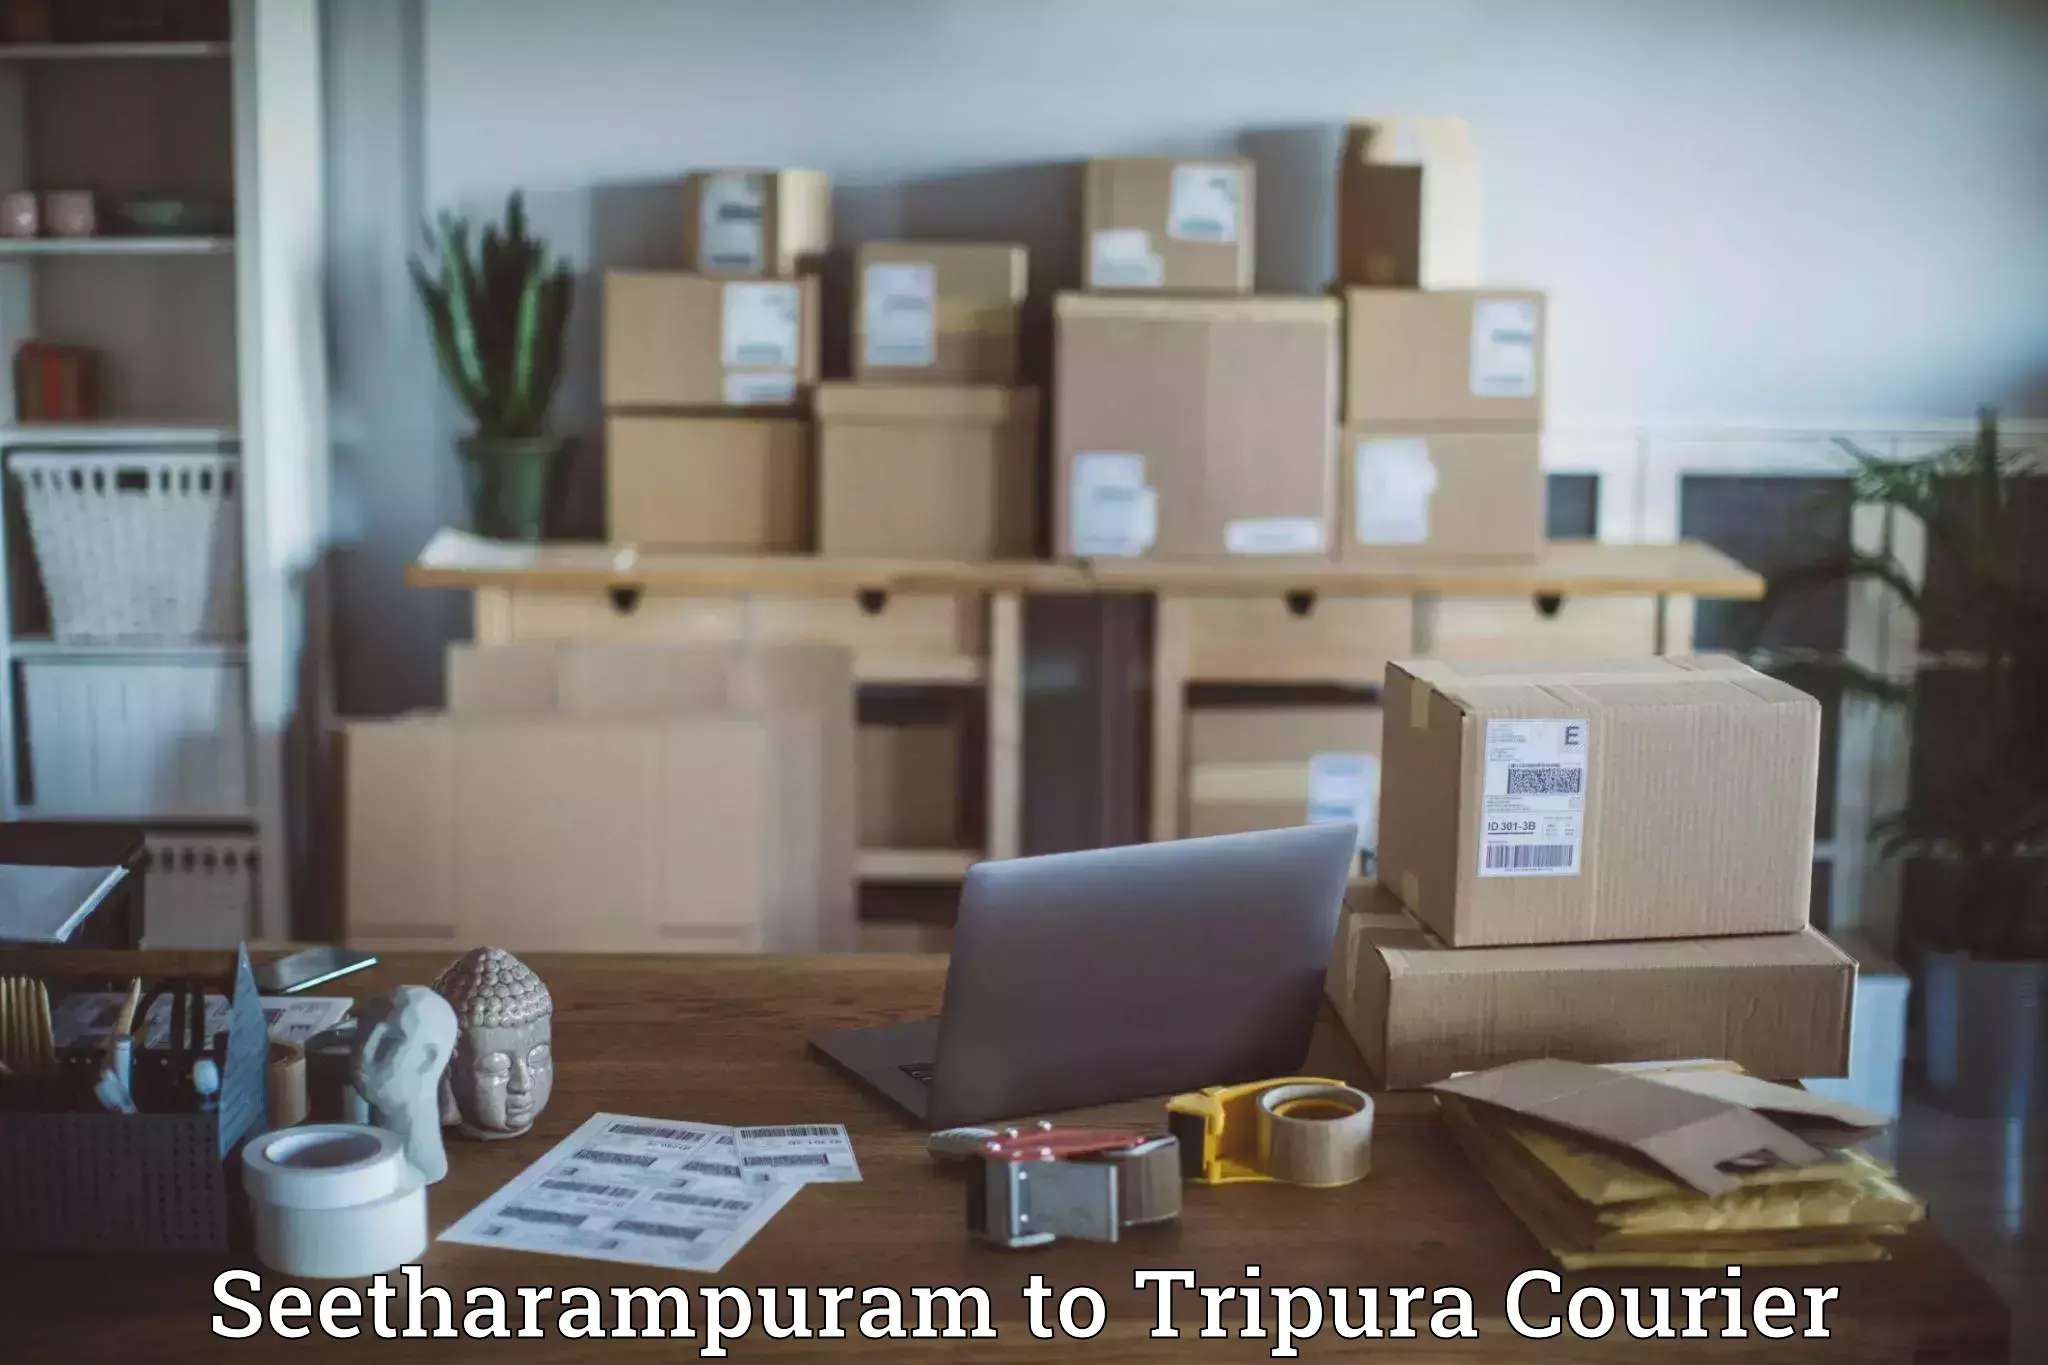 Reliable delivery network Seetharampuram to IIIT Agartala